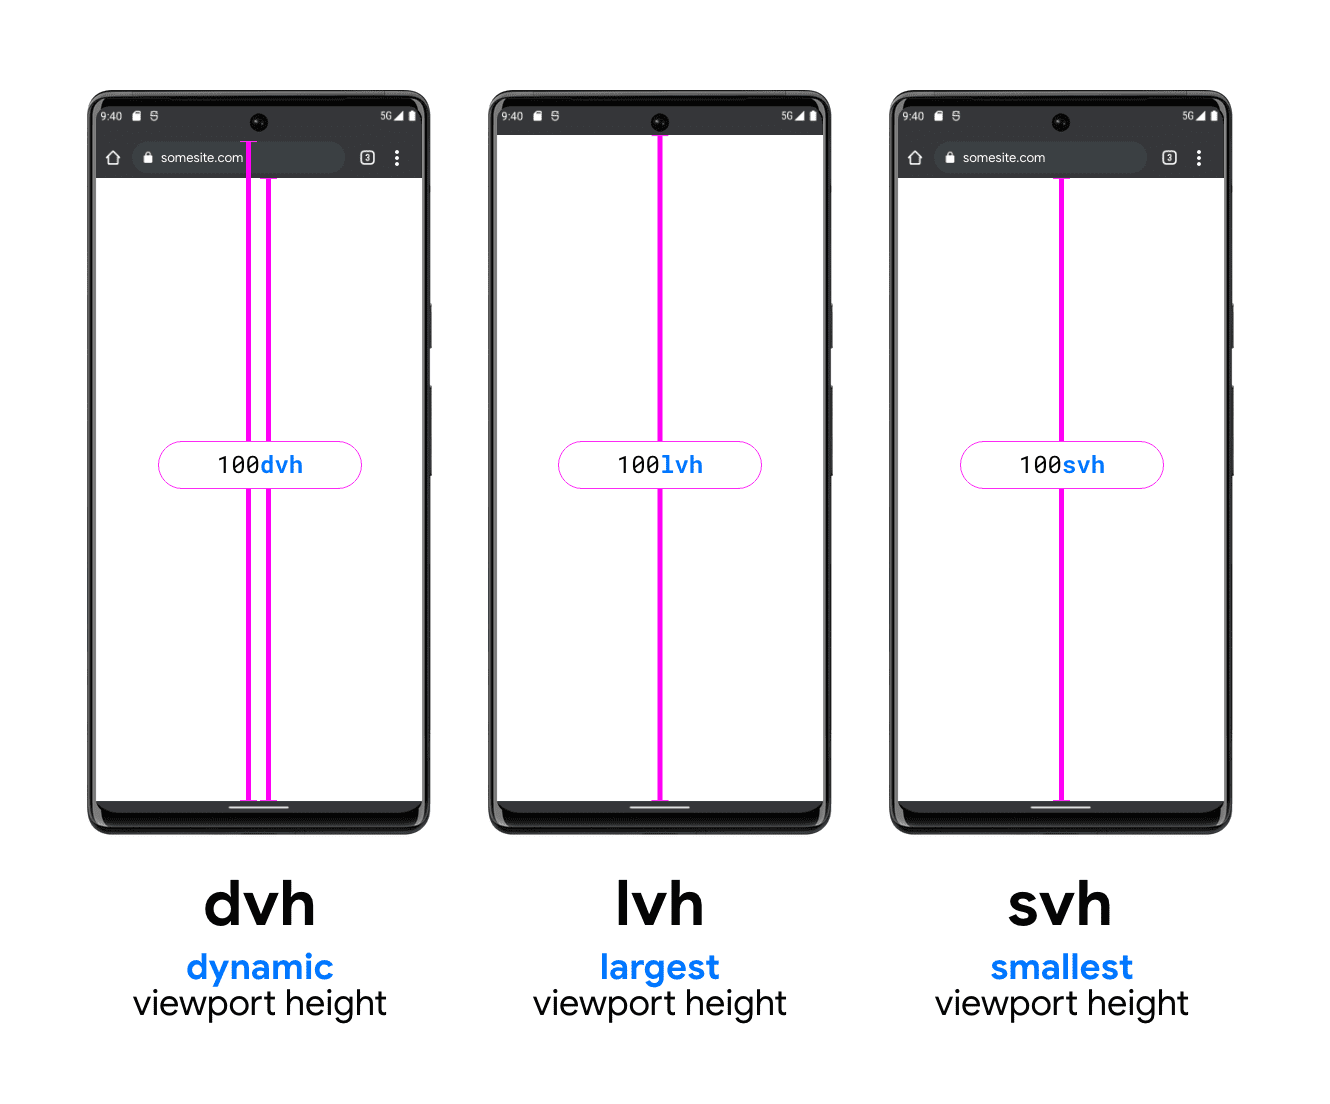 DVH、LVH、SVH を説明する 3 台のスマートフォンのグラフィック。DVH のサンプル スマートフォンには 2 本の垂直線があります。1 つは検索バーの下部とビューポートの下部の間、もう 1 つは検索バーの上部（システム ステータスバーの下）からビューポートの下部までです。DVH はこの 2 つの長さのどちらにできるかを示しています。LVH は中央に表示され、デバイス ステータスバーの下部とスマートフォンのビューポートのボタンの間に 1 本の線が表示されます。最後は SVH ユニットの例で、ブラウザの検索バーの下部からビューポートの下部までの線を示しています。